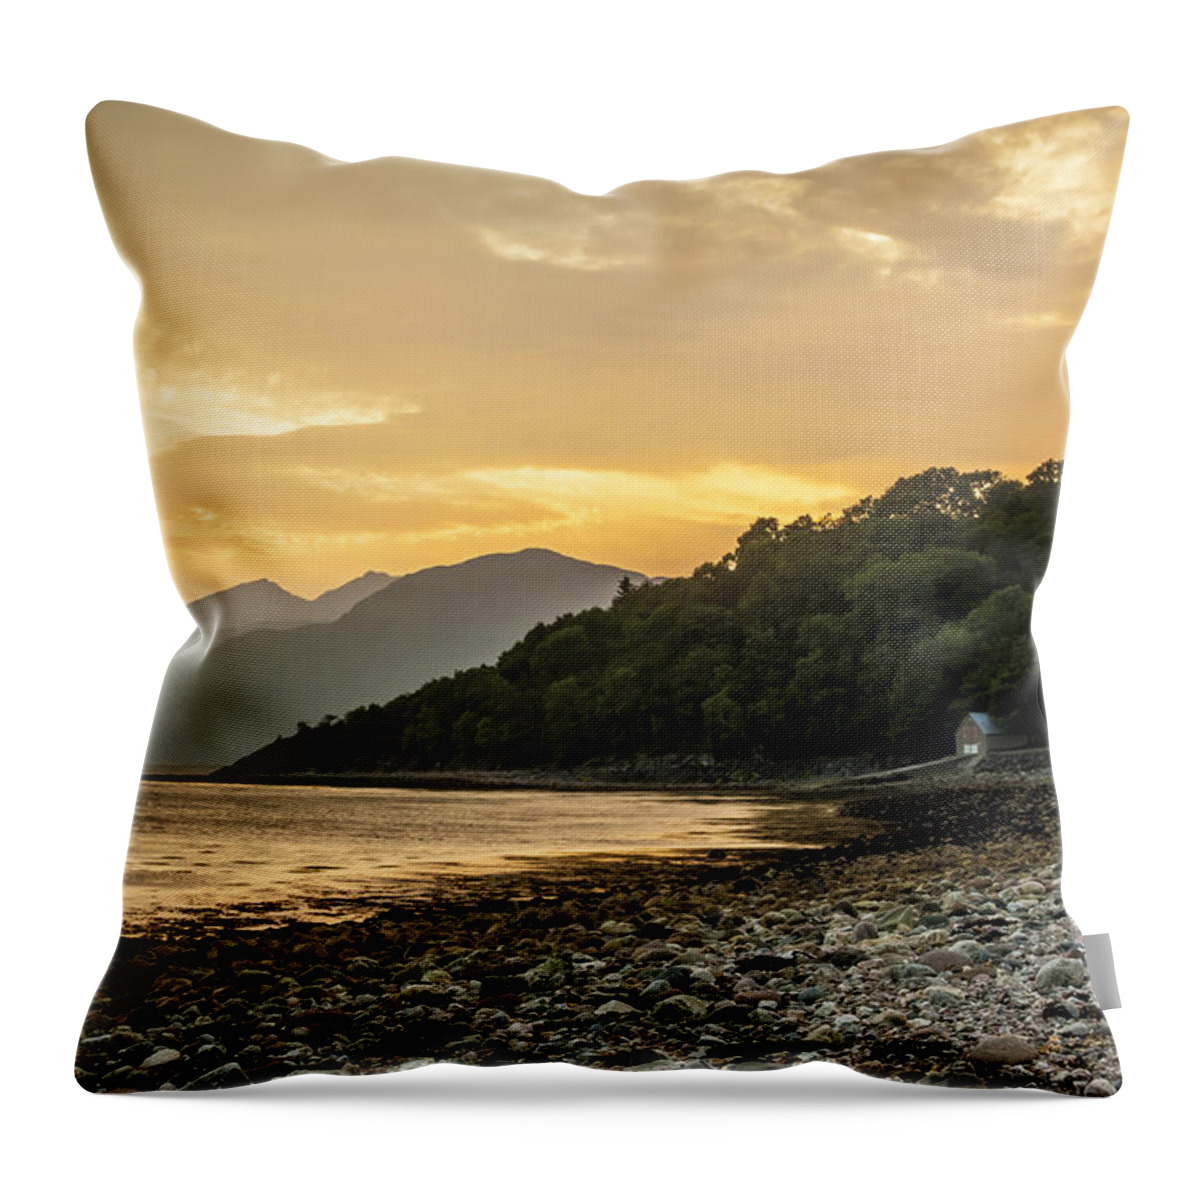 Linnhe Throw Pillow featuring the photograph Loch Linnhe at Sunset. by John Paul Cullen